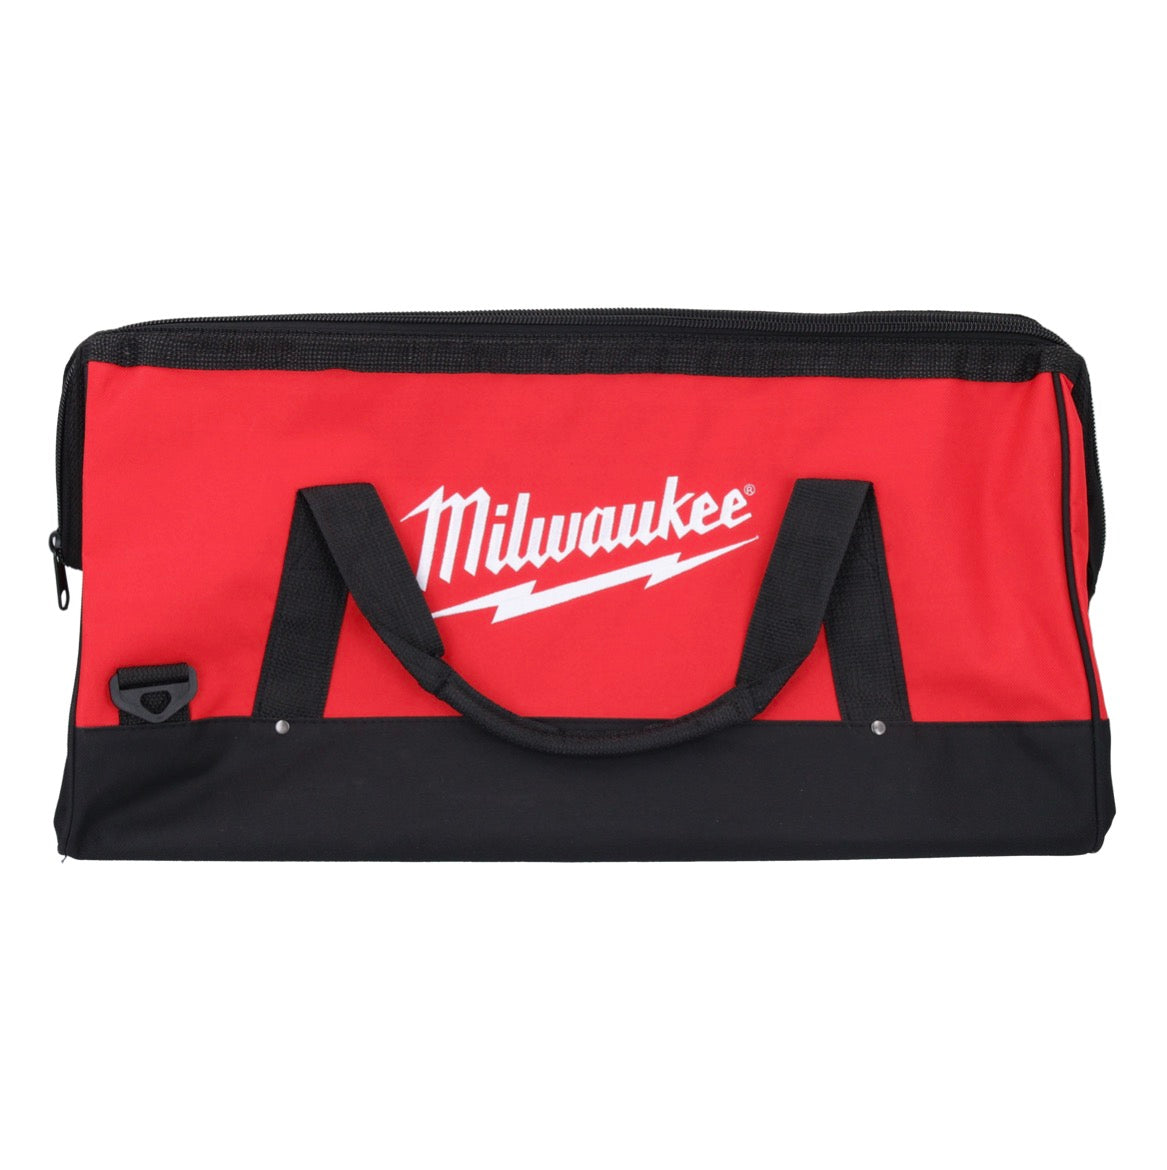 Milwaukee Werkzeug Tasche 560 x 270 x 270 mm mit Schultergurt rot / schwarz